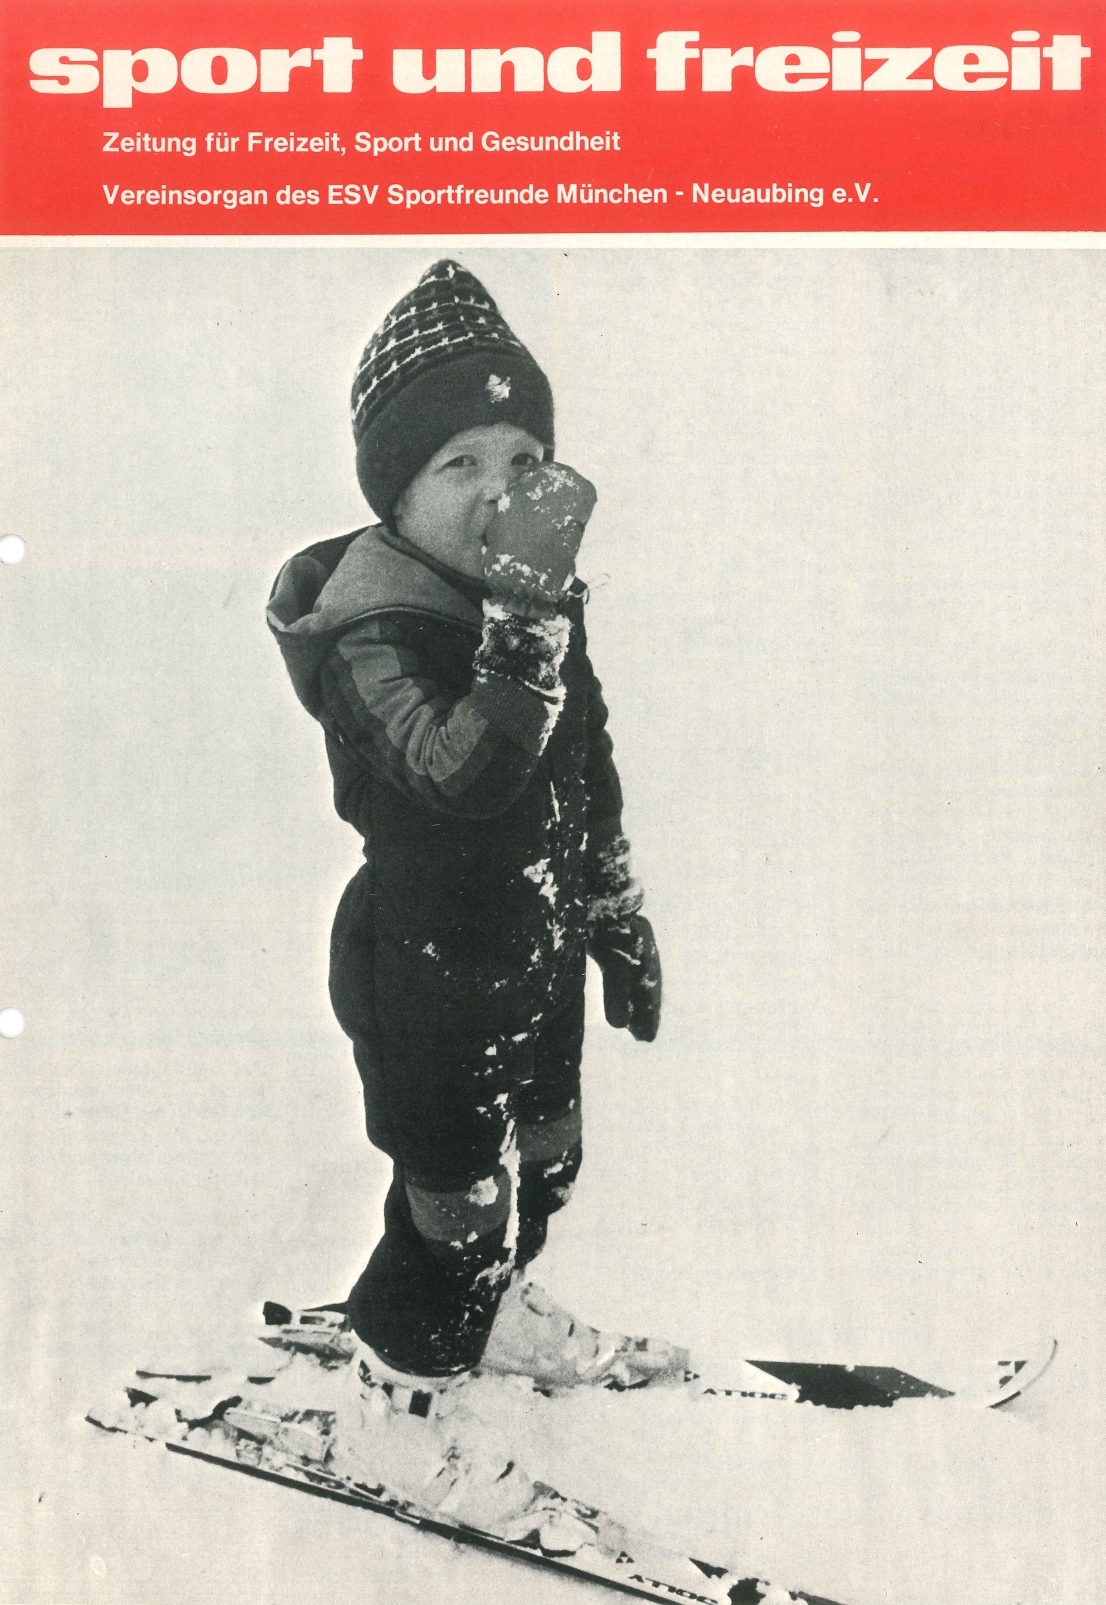 SkiSchule 1970